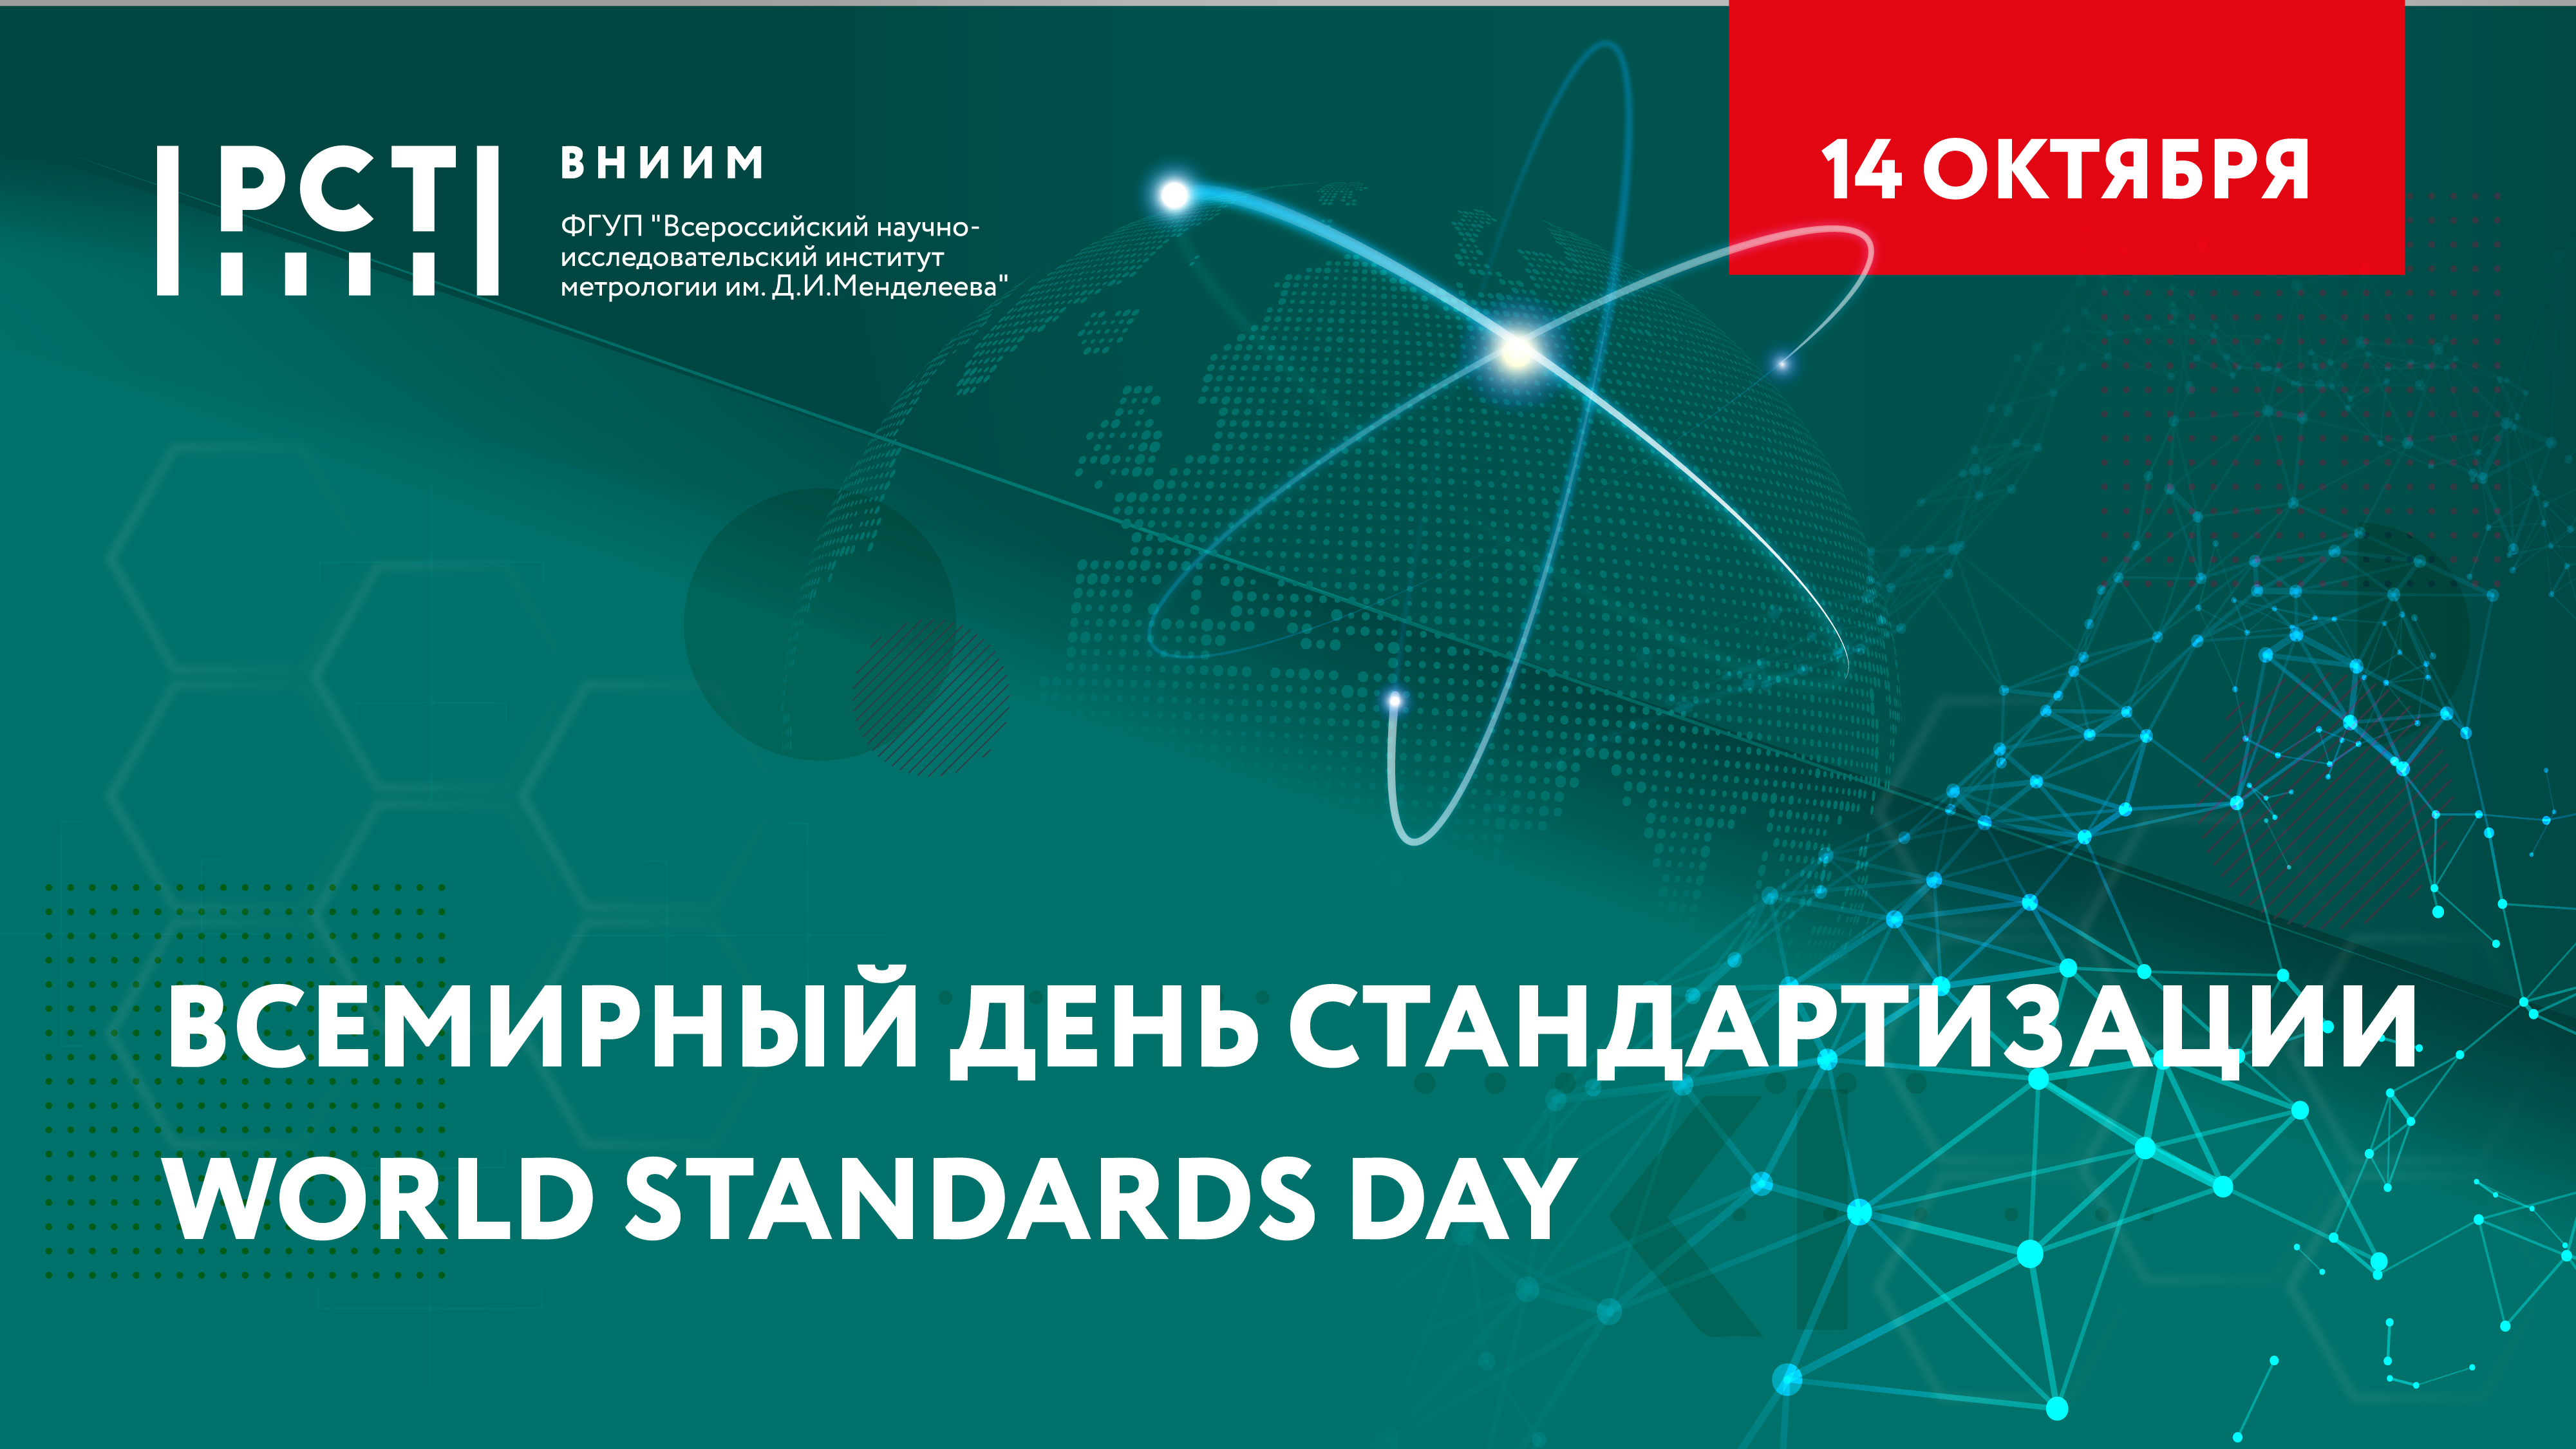 ВНИИМ поздравляет со Всемирным днем стандартизации